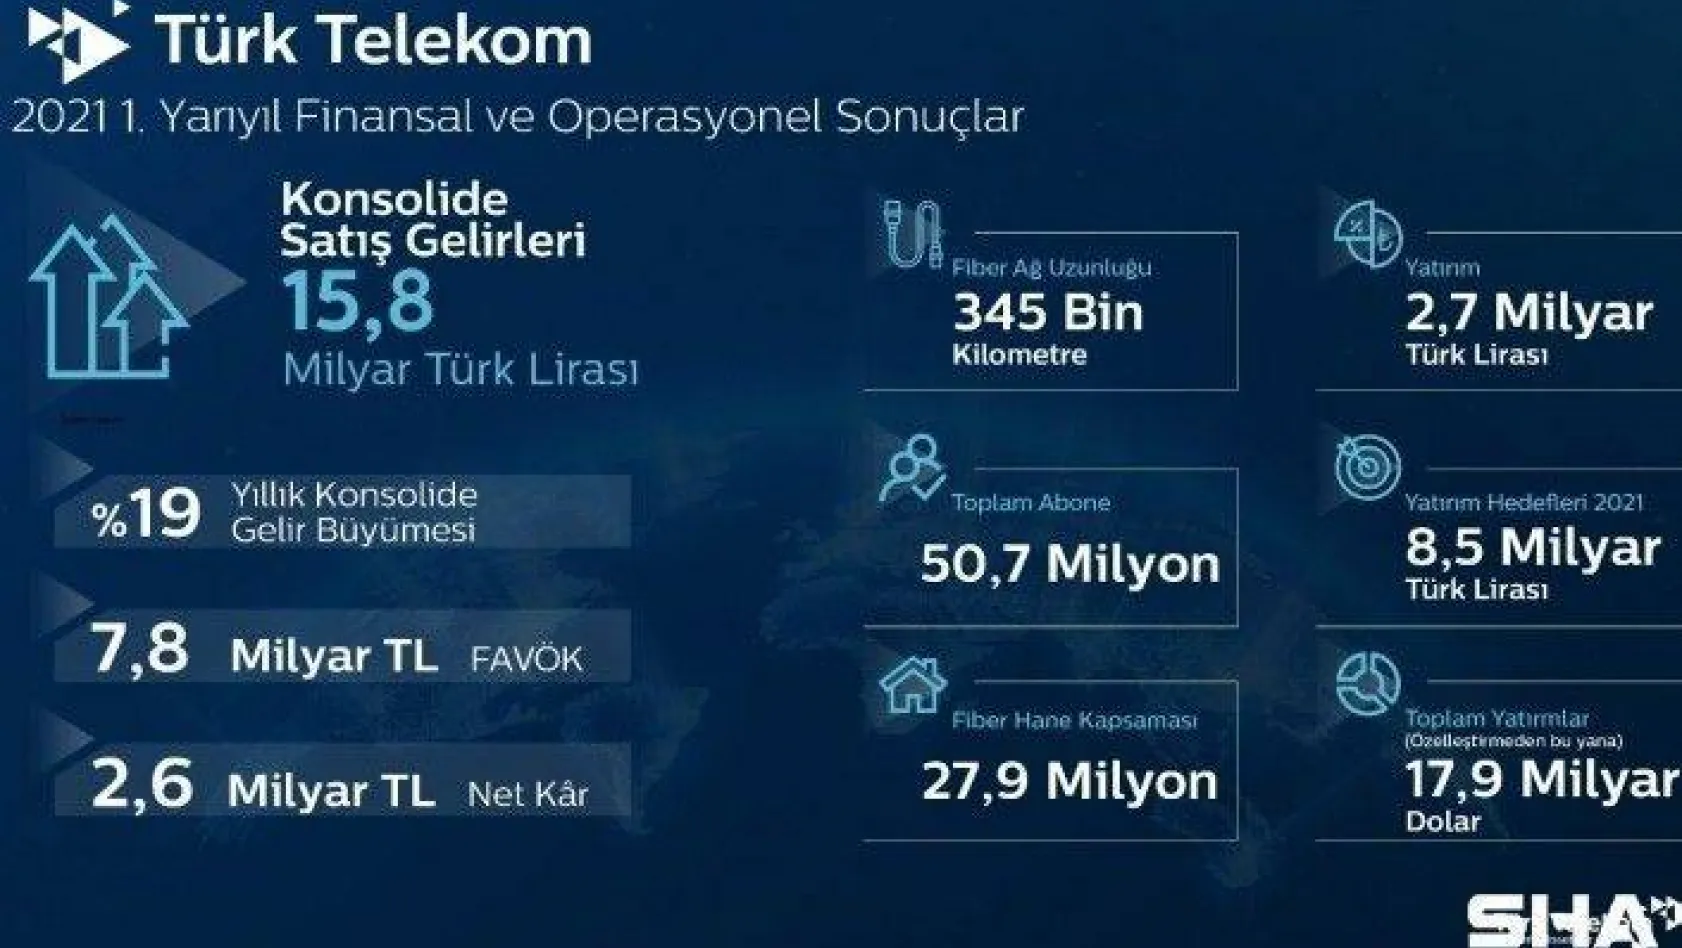 Türk Telekom, 2021'in ilk yarı finansal ve operasyonel sonuçlarını açıkladı